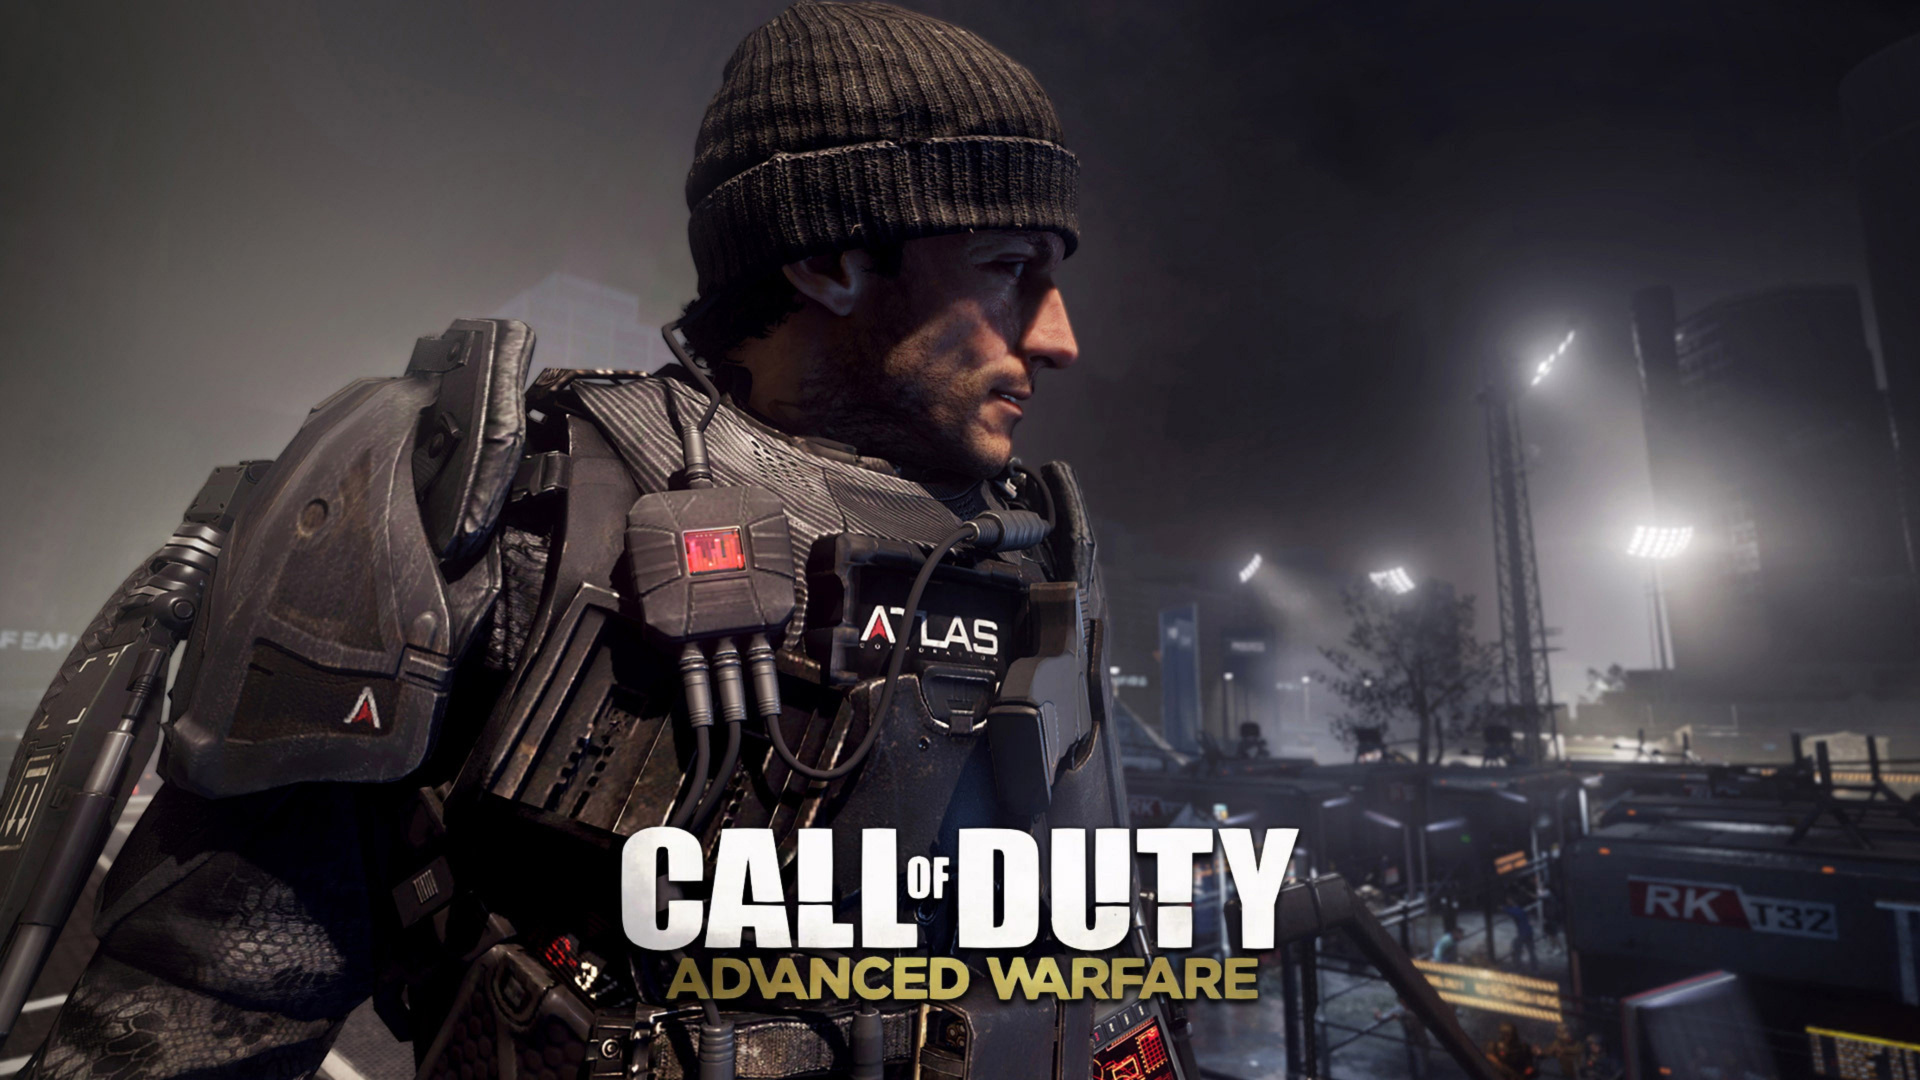 Call of Duty Advanced Warfare, Sledgehammer Games, Multijugador Juego de Video, Juego de Pc, Soldado. Wallpaper in 1920x1080 Resolution